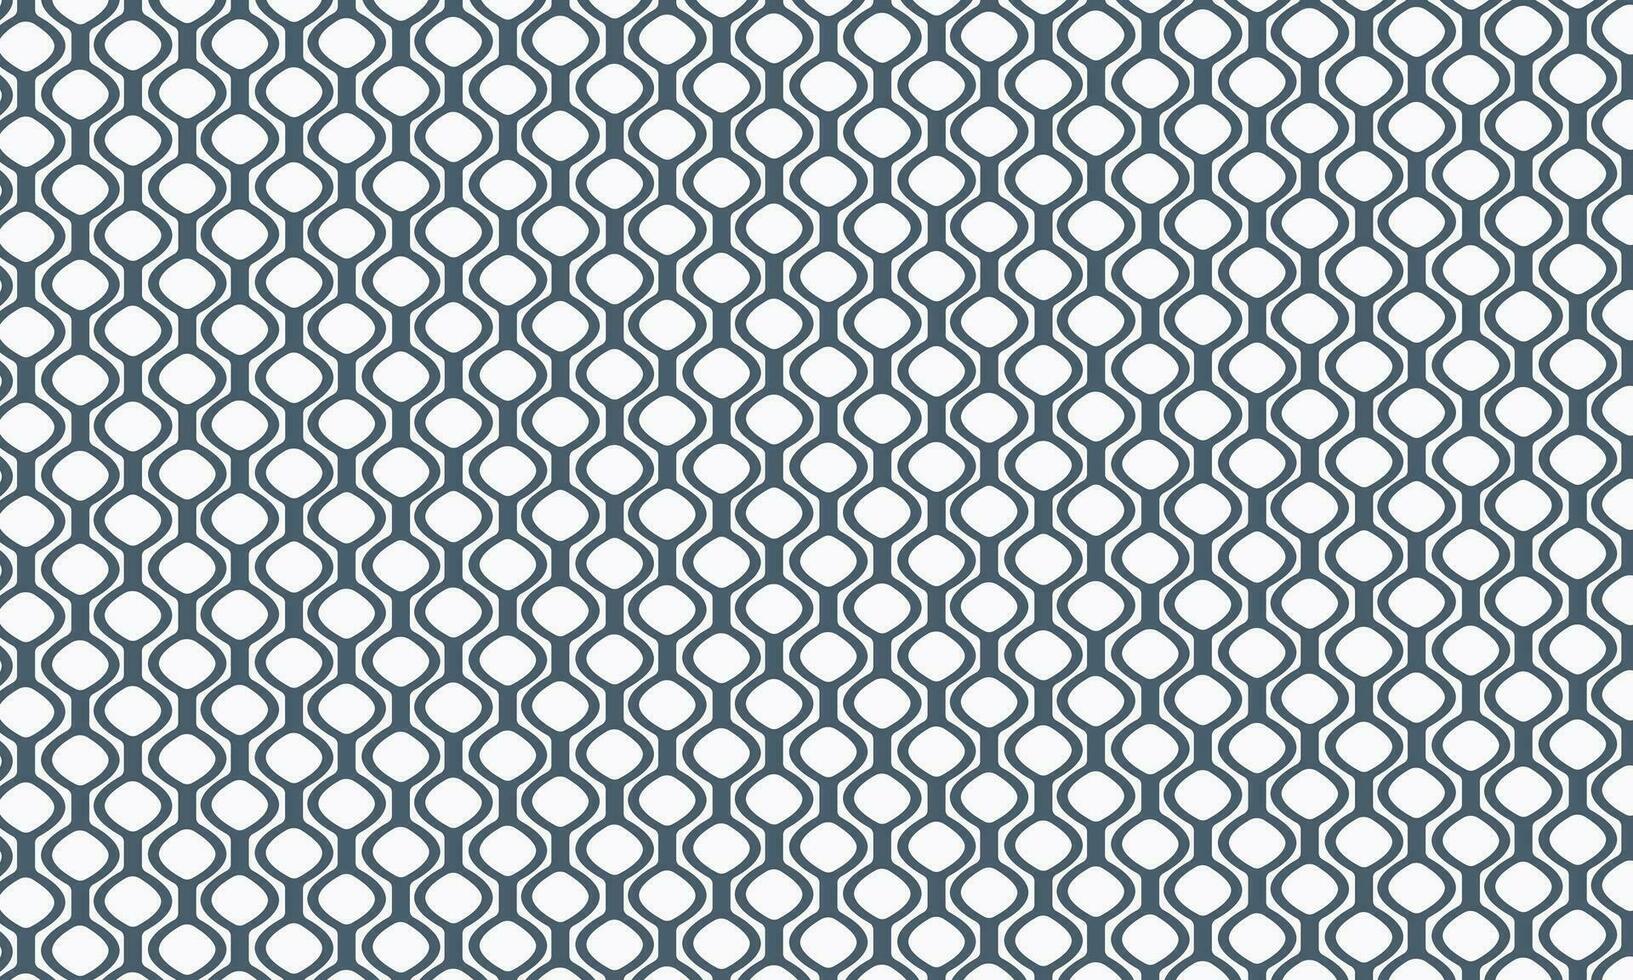 achtergrond vector patroon structuur voor interieur decor in grijs tonen